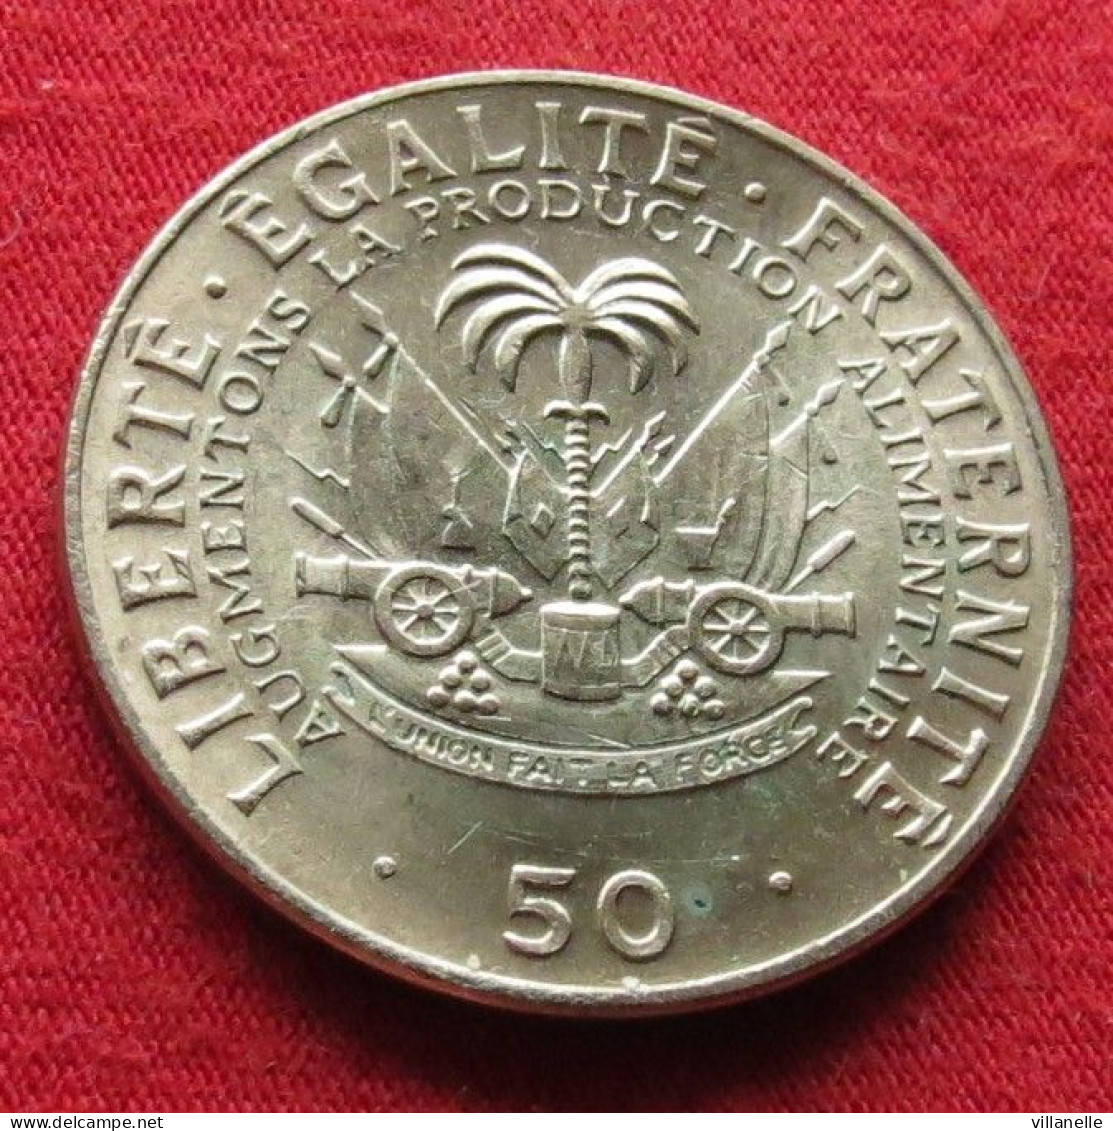 Haiti 50 Centimes 1972 FAO F.a.o. UNC ºº - Haití